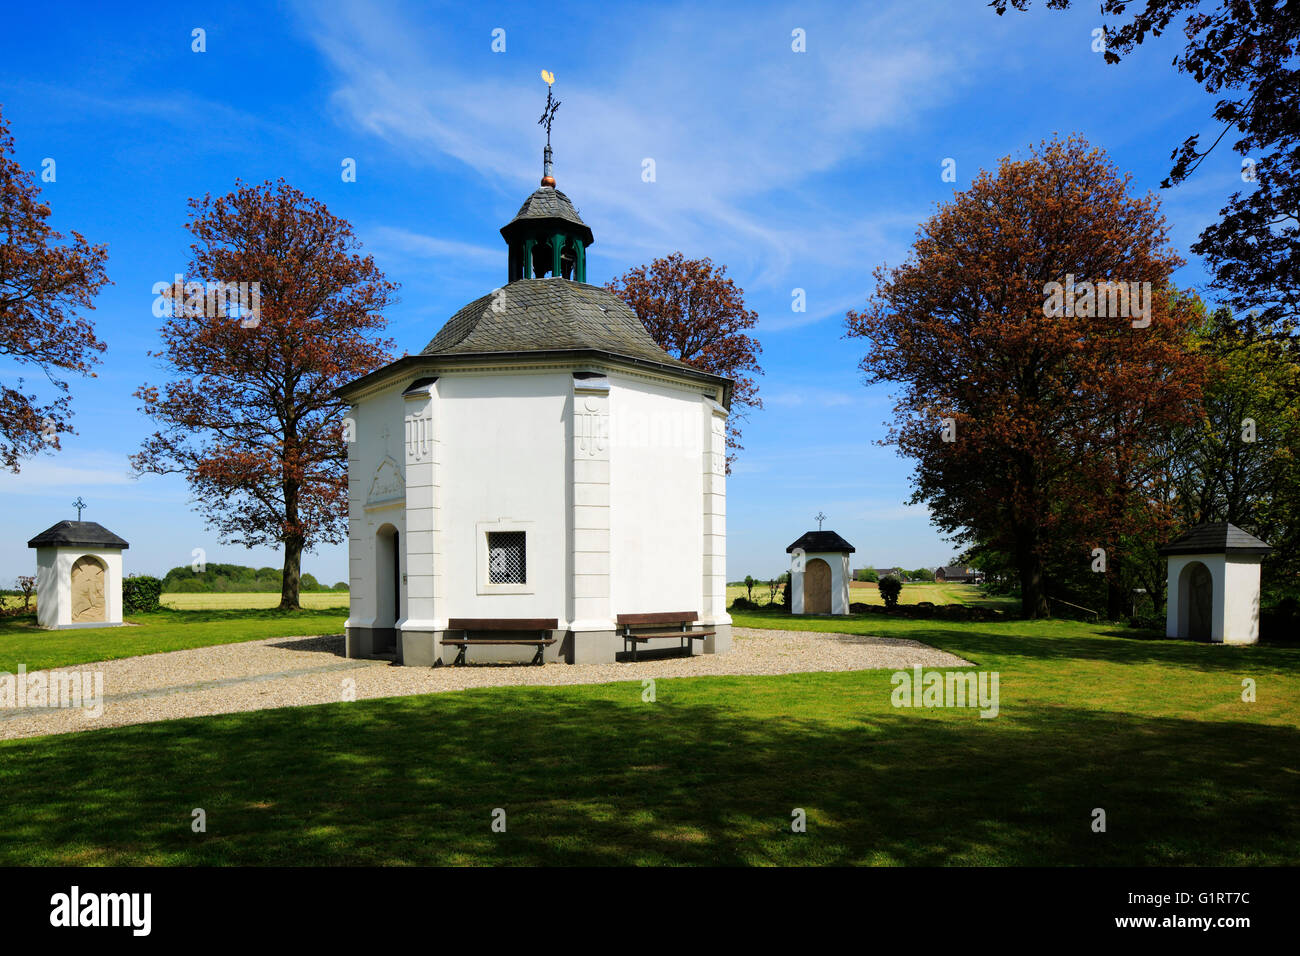 Kreuzkapelle mit Kreuzwegstationen in Nettetal-Hinsbeck, Niederrhein, Nordrhein-Westfalen Stock Photo